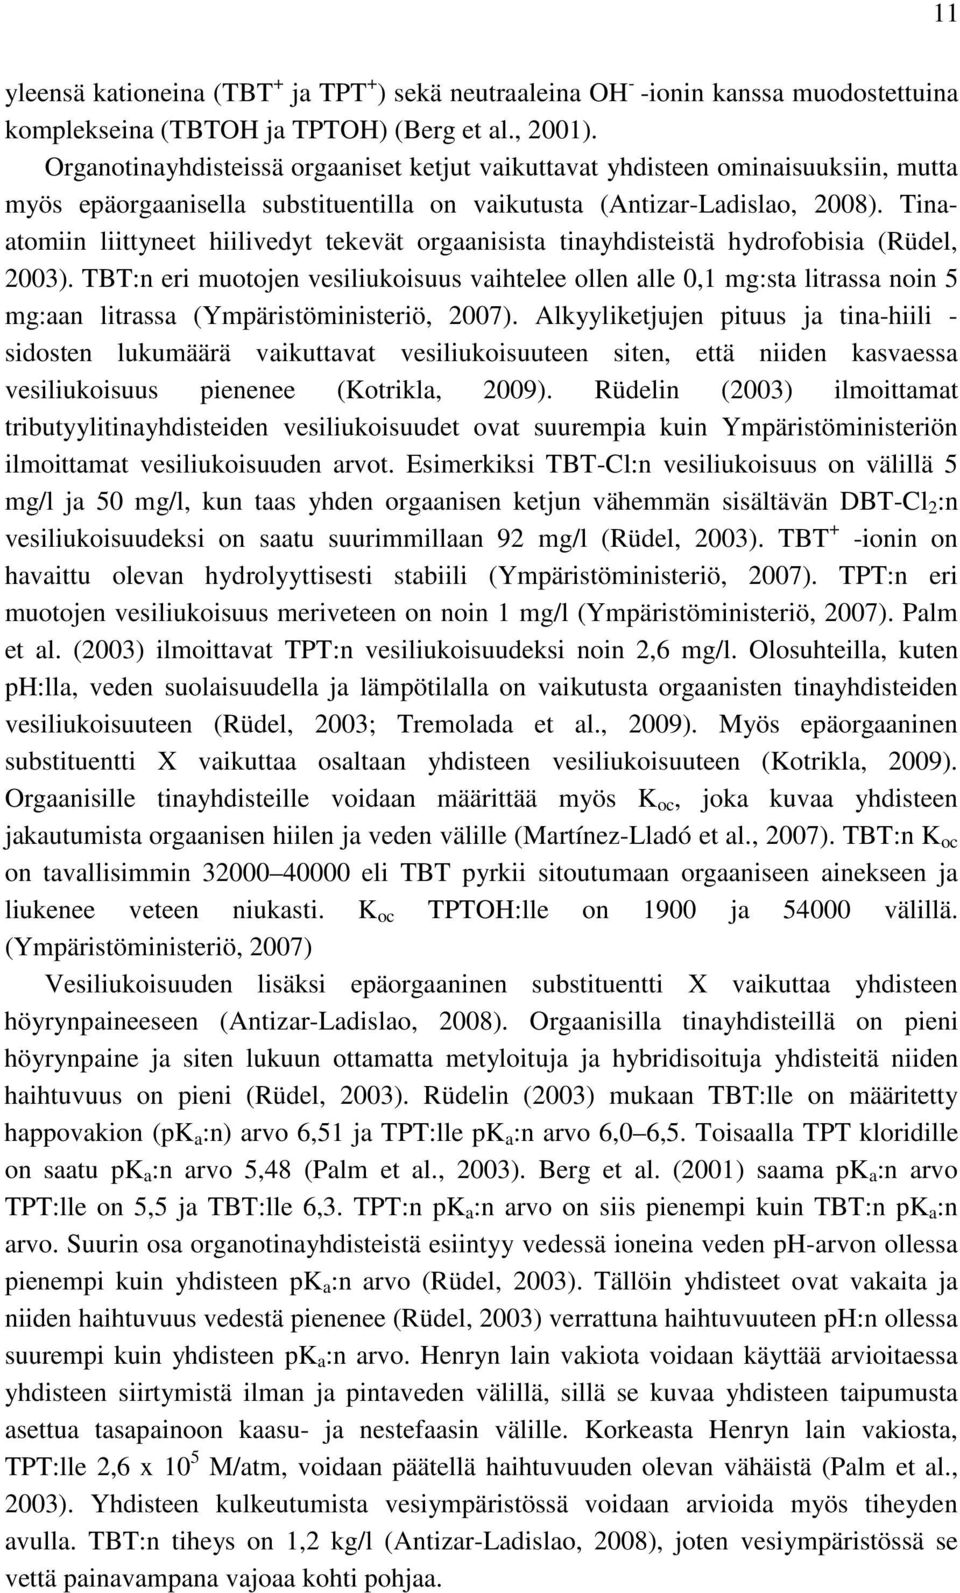 Tinaatomiin liittyneet hiilivedyt tekevät orgaanisista tinayhdisteistä hydrofobisia (Rüdel, 2003).